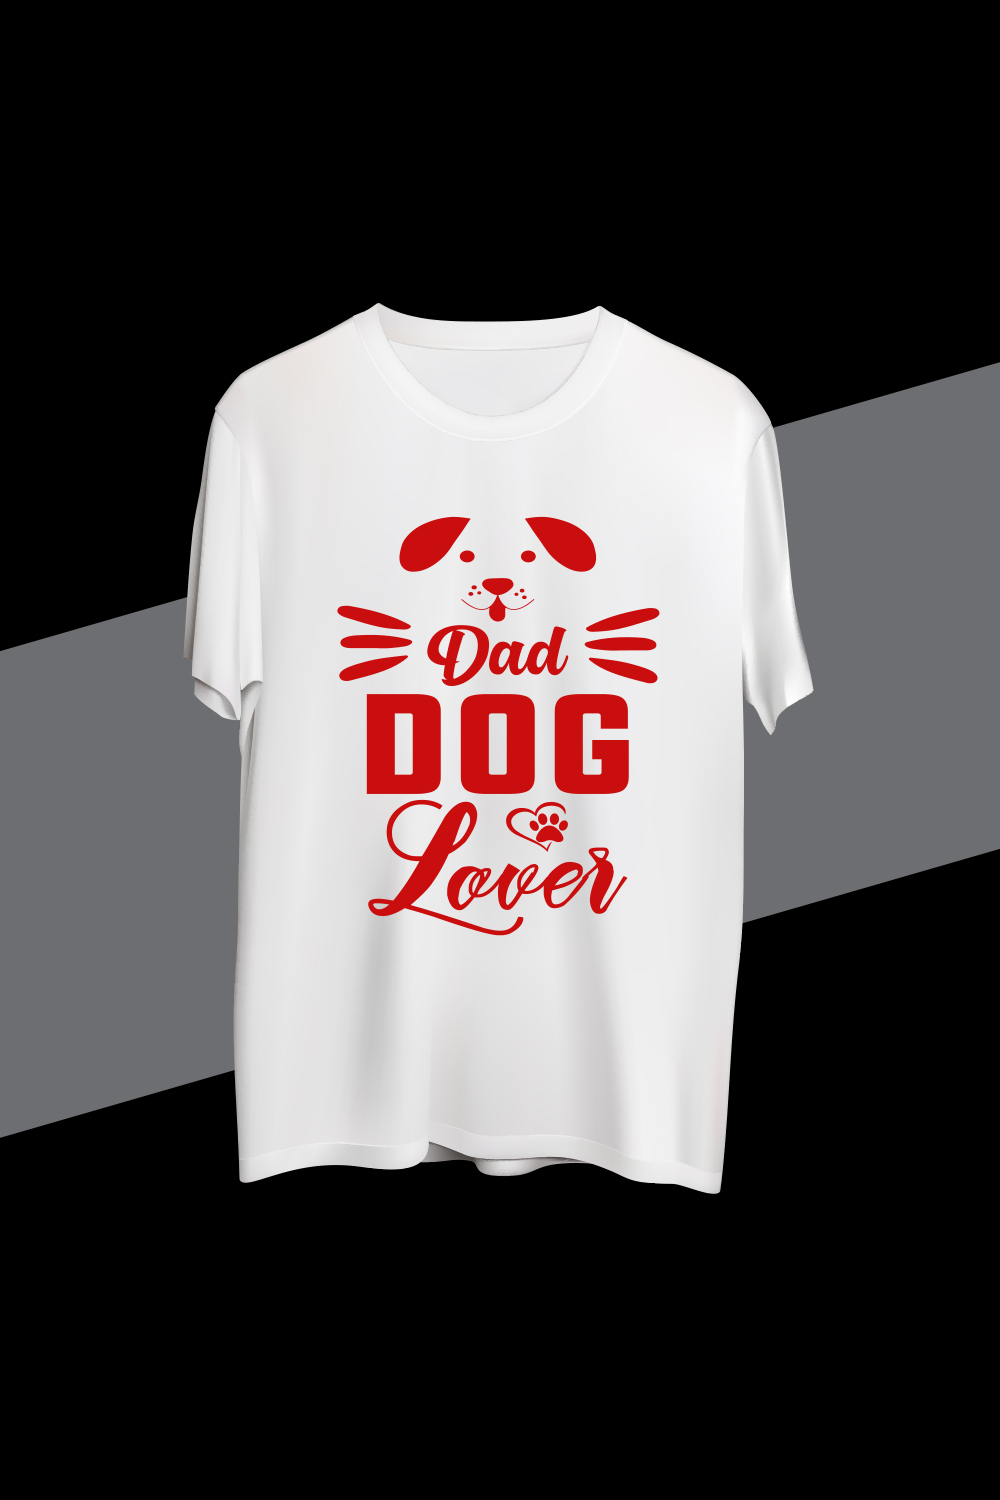 Dad Dog Lover T-shirt design pinterest preview image.